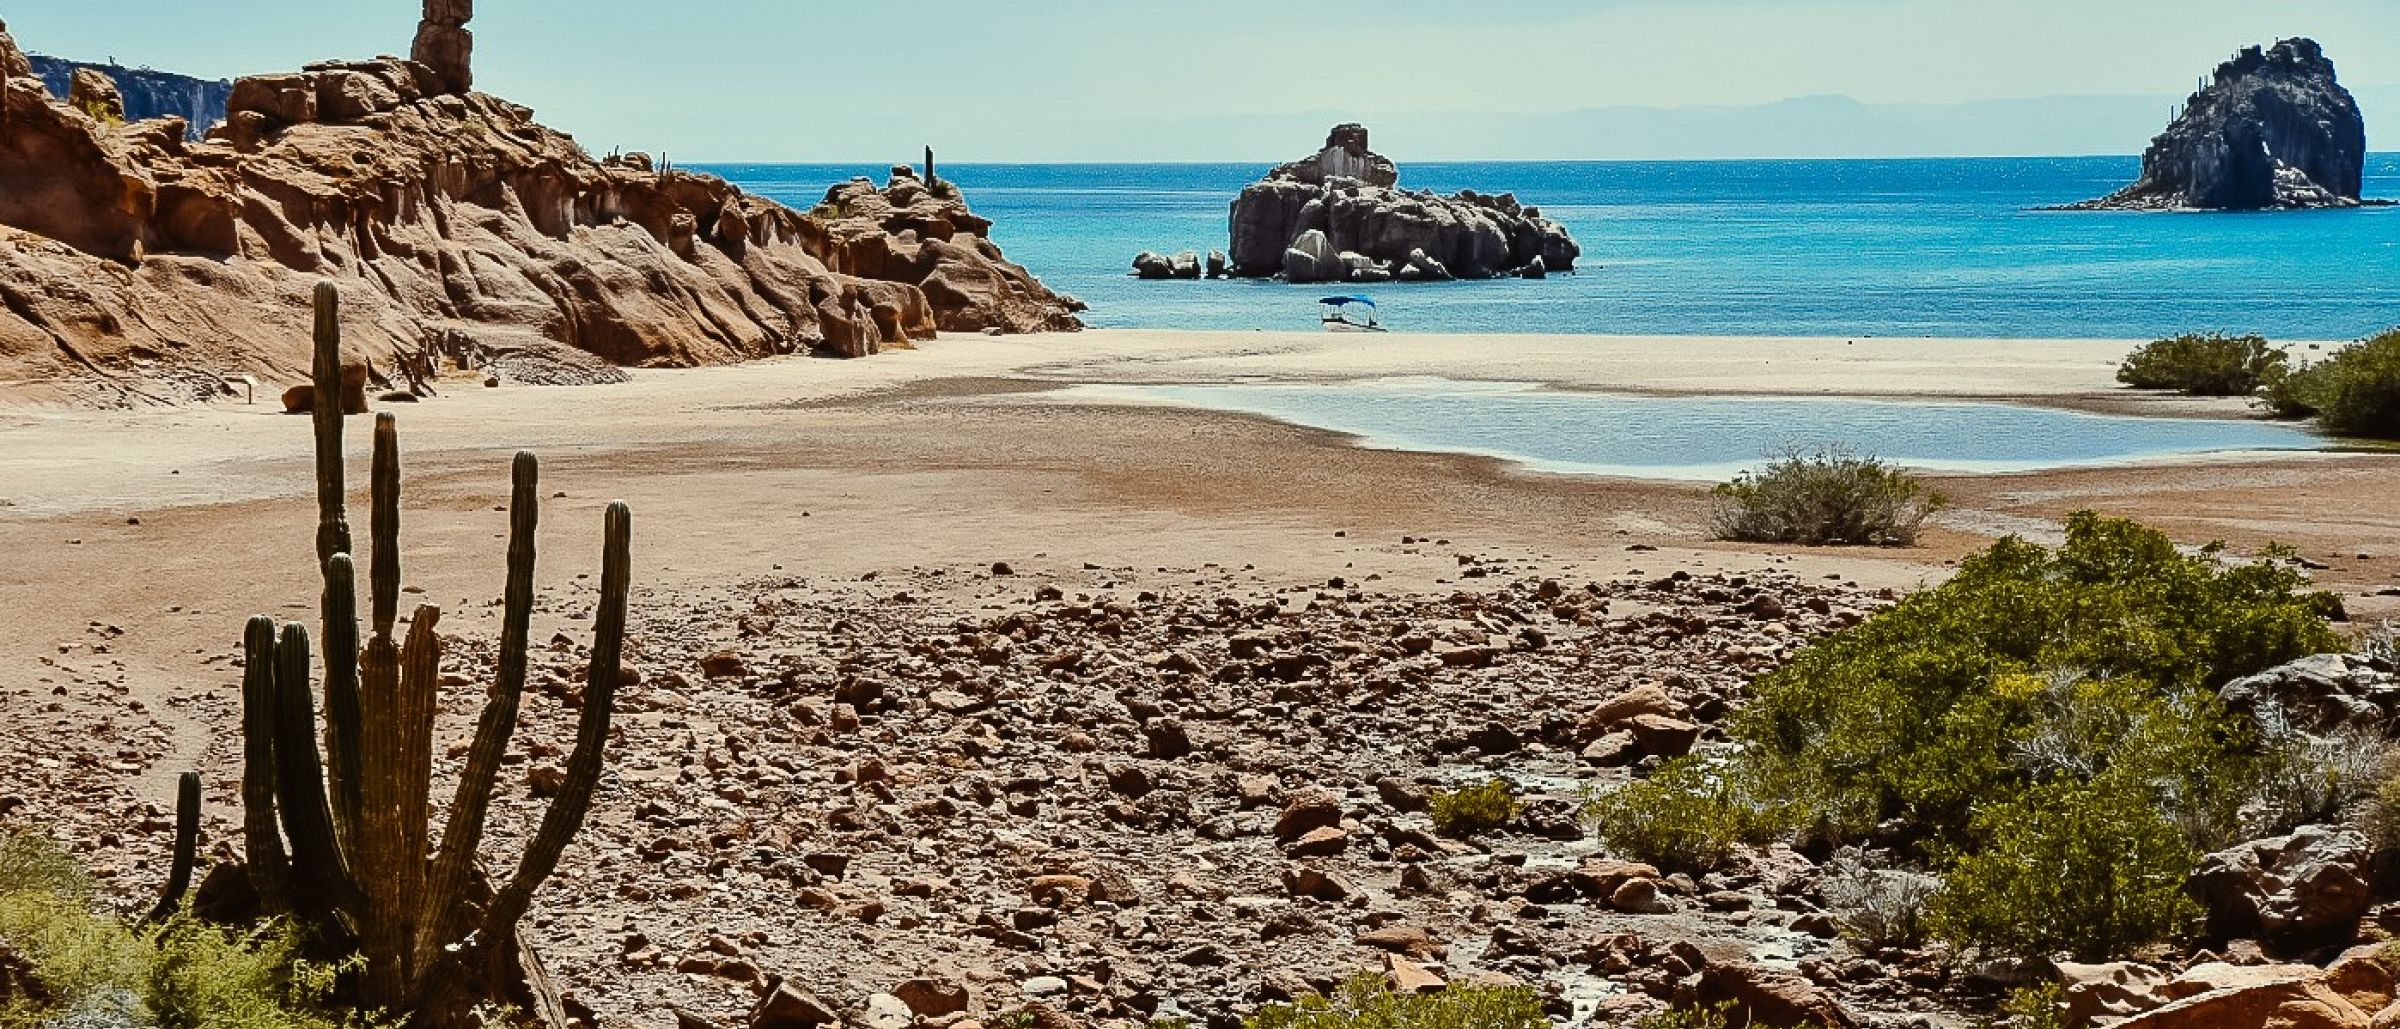 Typische Landschaft auf der Insel Espiritu Santo vor der Baja California: Geröll- und Steinwüste und türkisfarbenes Meer